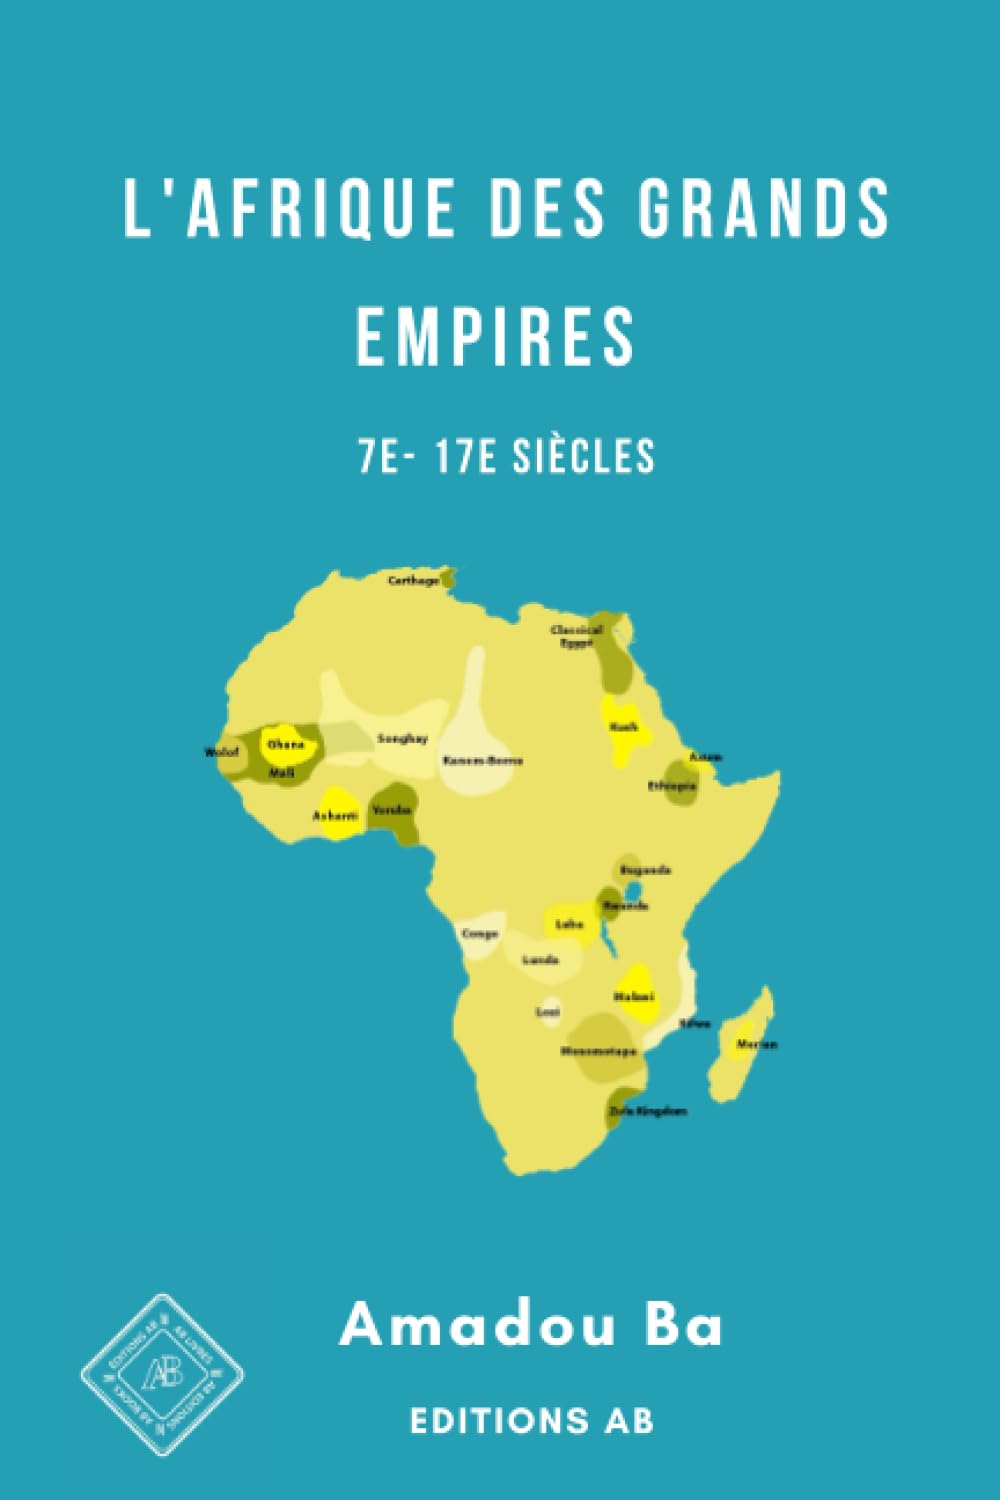 L'Afrique des Grands Empires (7e-17e siècles): 1000 ans de prospérité économique, d'unité politique,